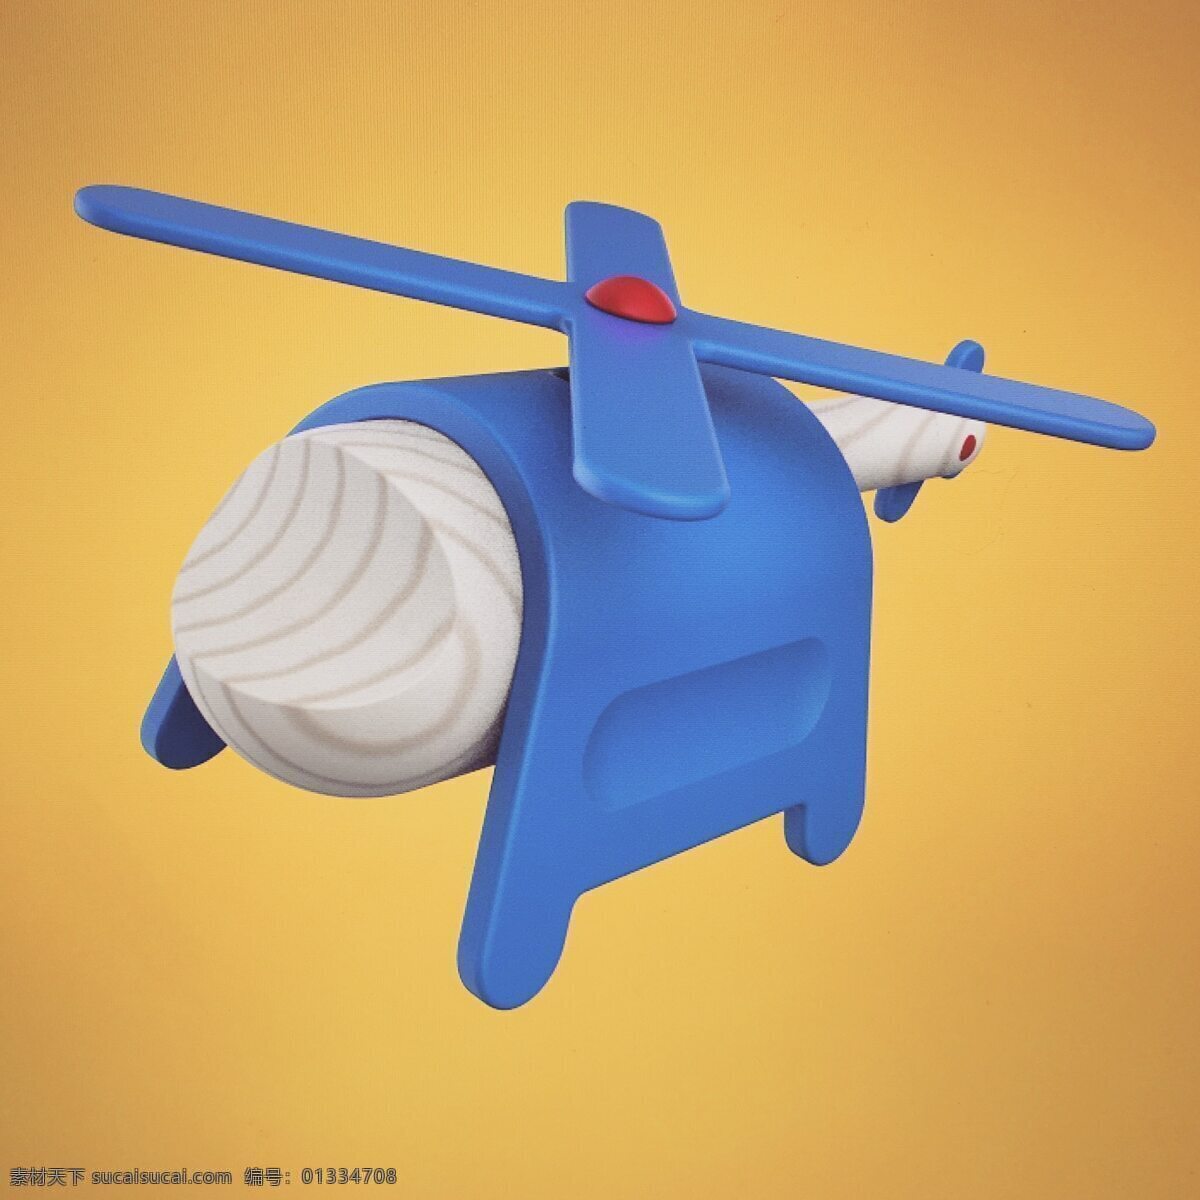 木质 儿童玩具 飞机 3d建模 jpg素材 产品 螺旋桨 手绘 直升机